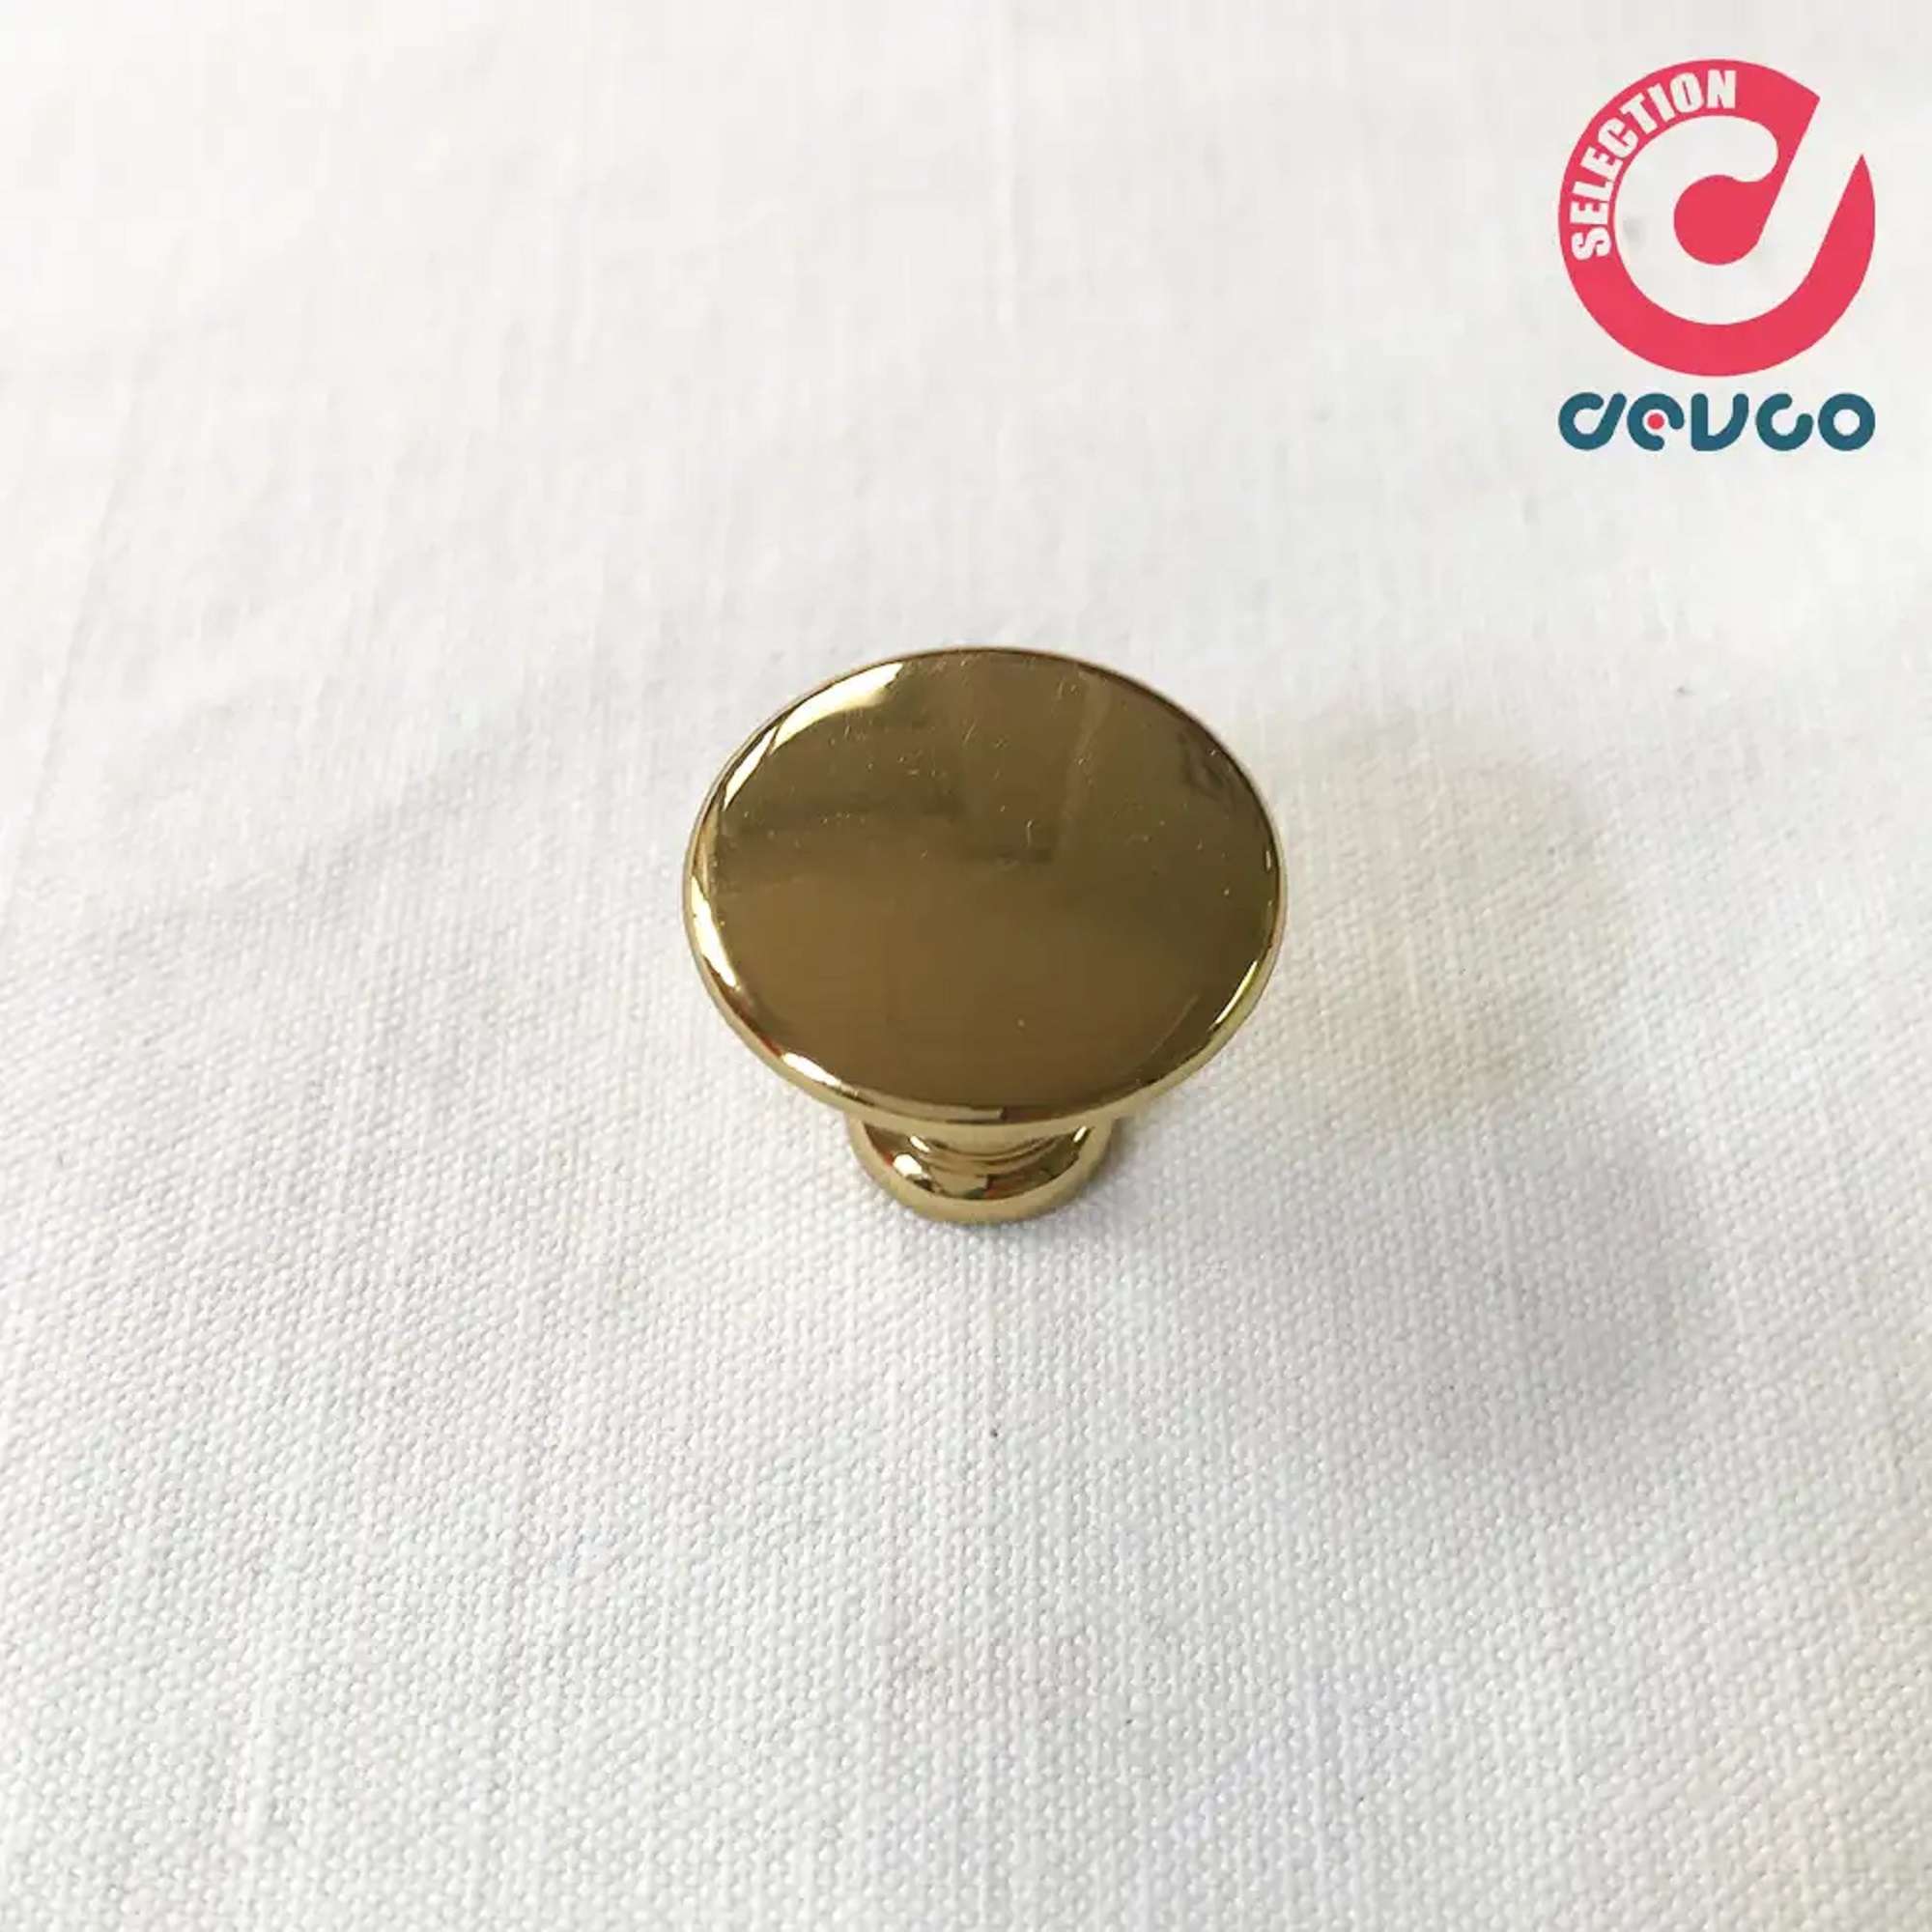 Knob size 30 gold color  Omp Porro - 101 - 30